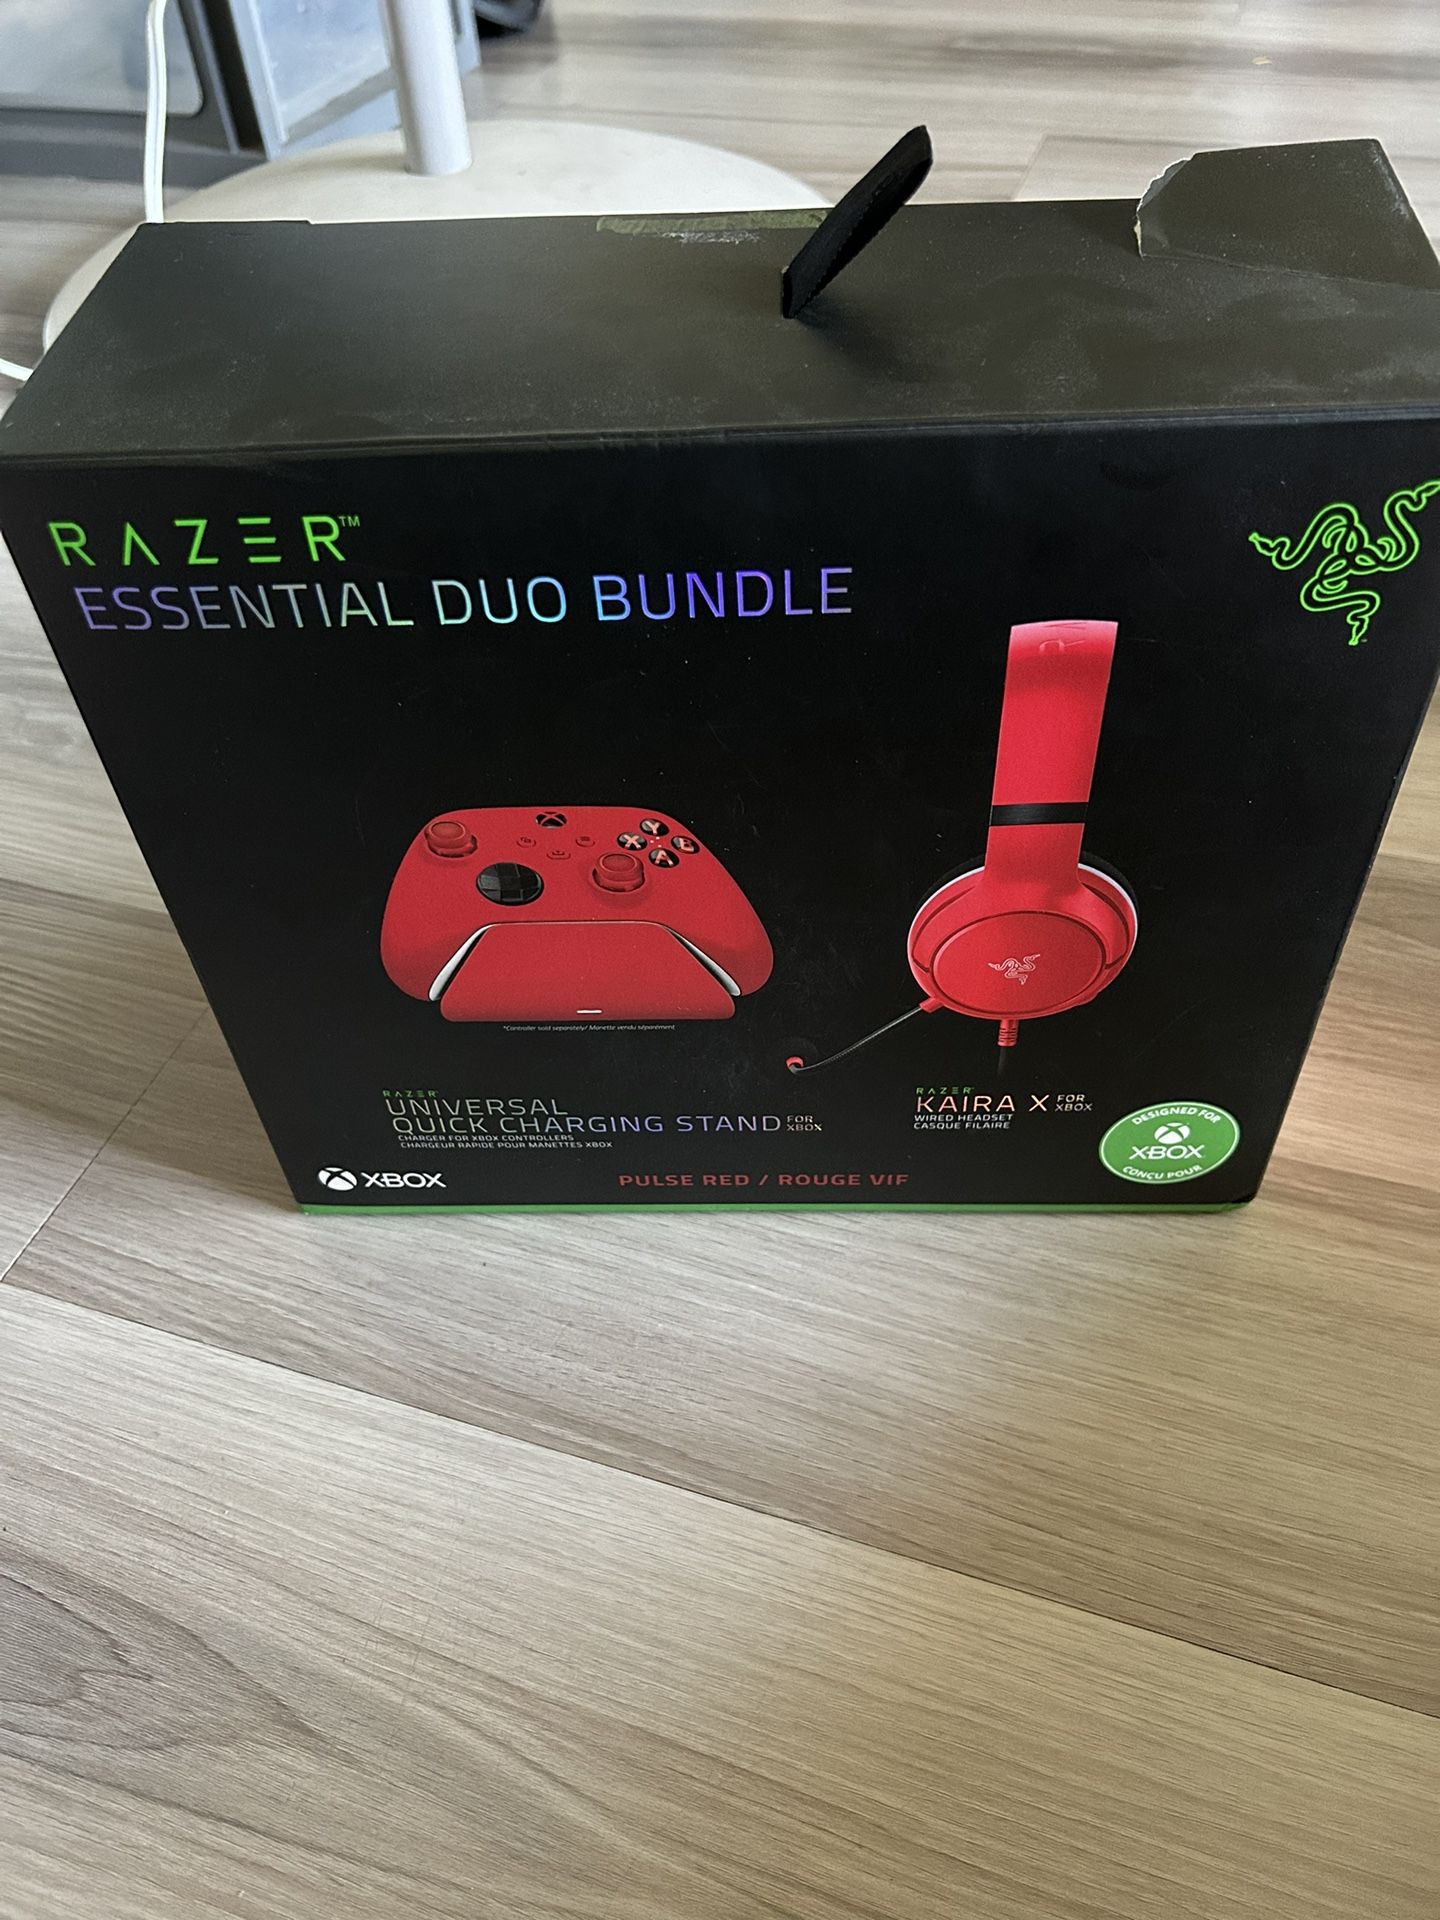  Razer Gamer Headphones & Dock Bundle